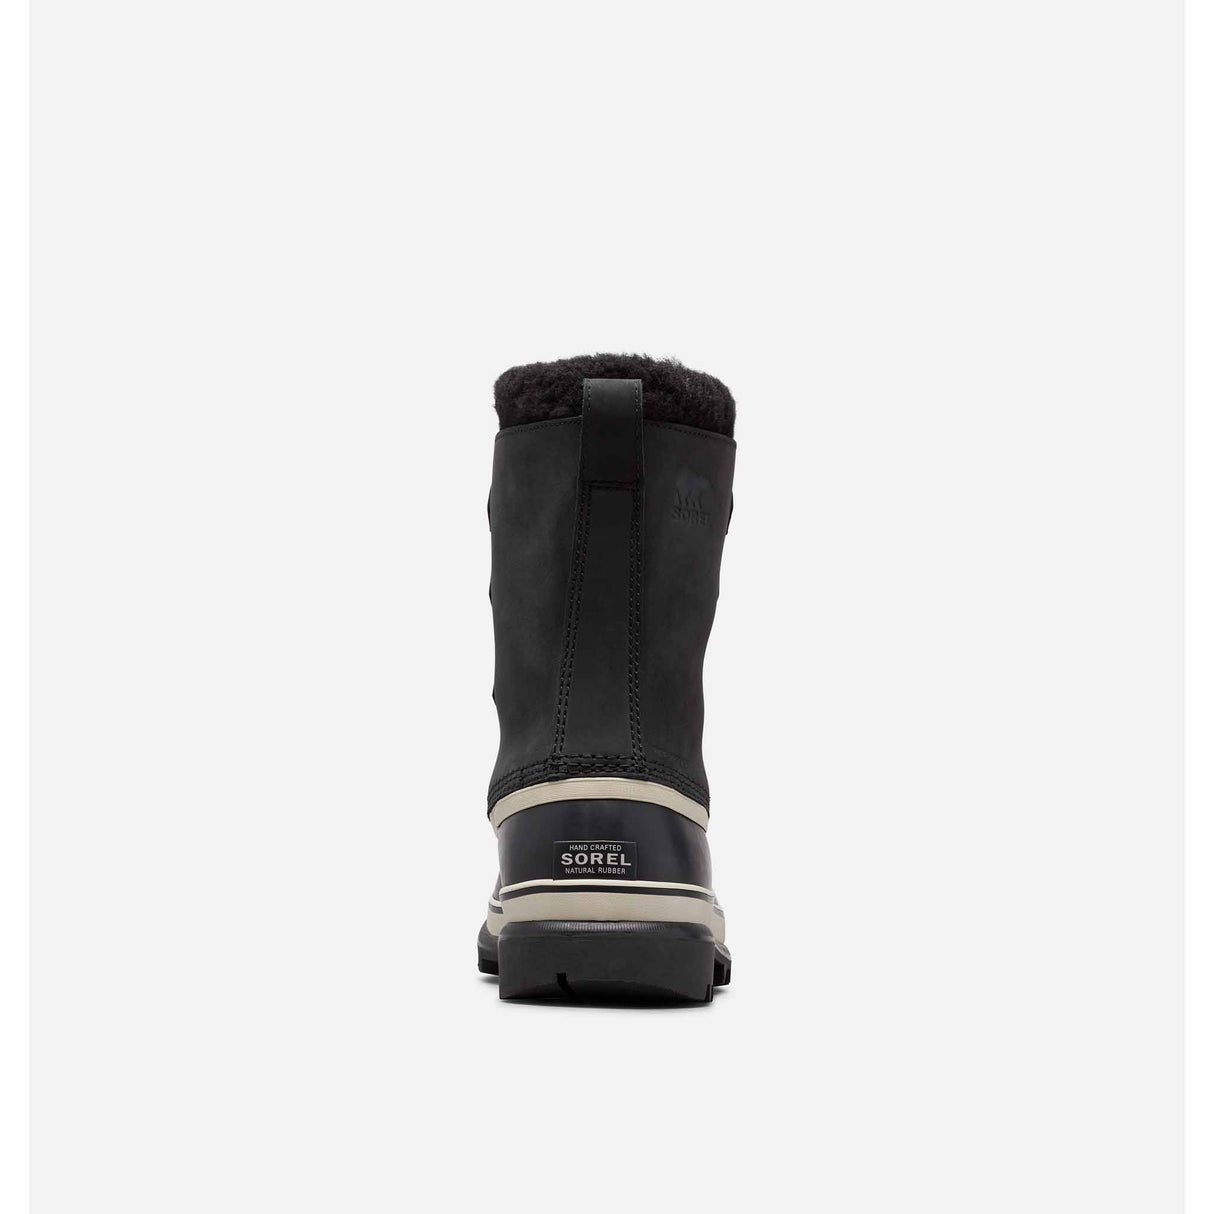 Sorel Caribou bottes d'hiver pour homme - Black / Dark Stone